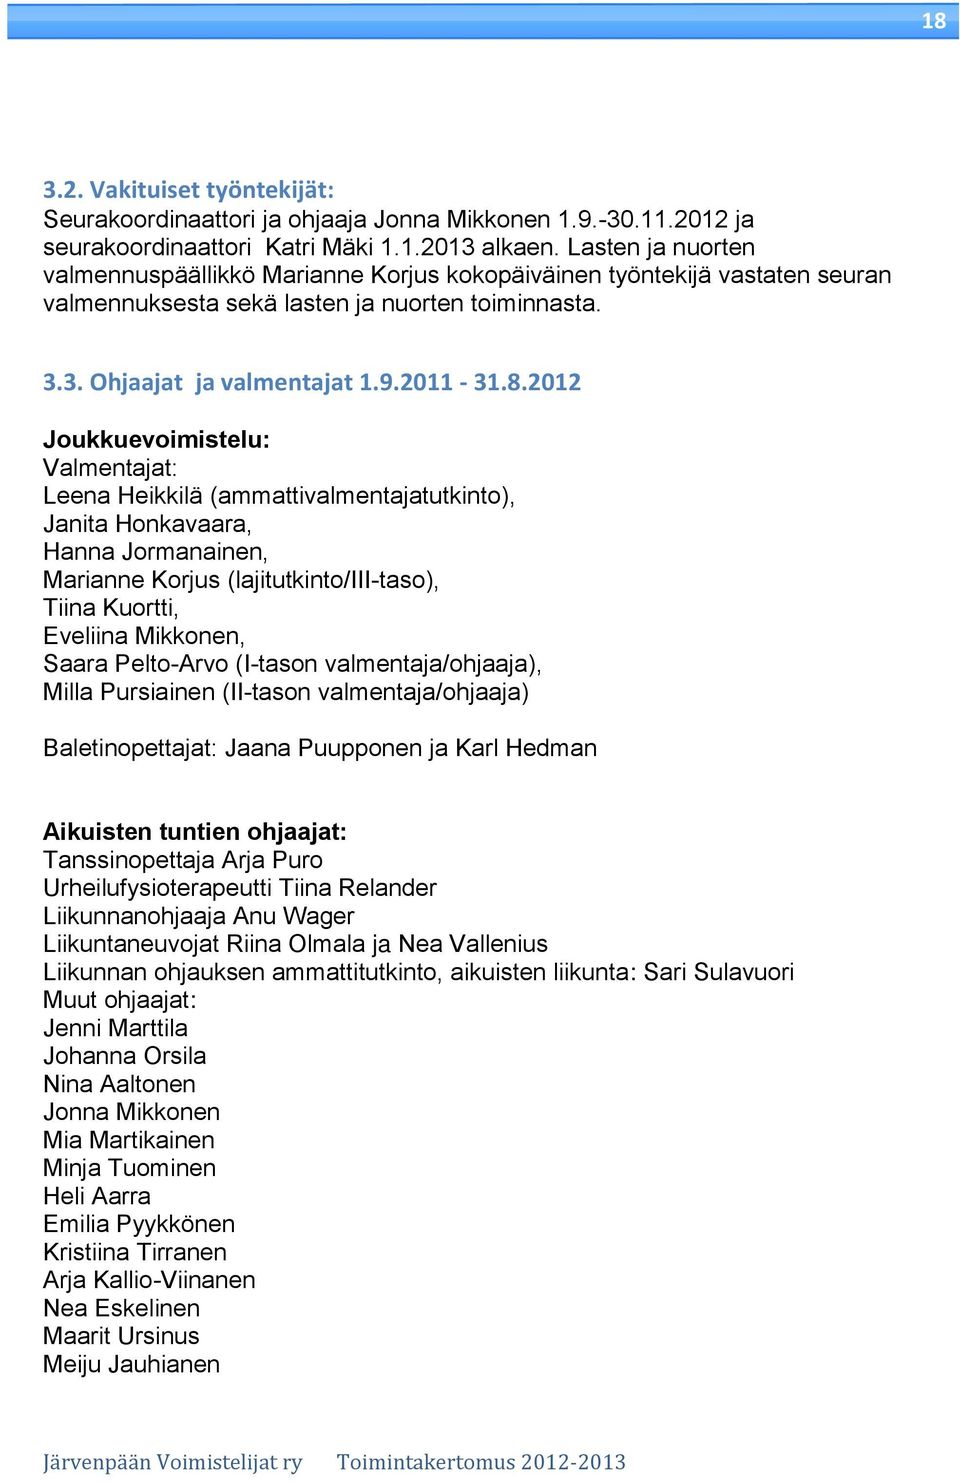 2012 Joukkuevoimistelu: Valmentajat: Leena Heikkilä (ammattivalmentajatutkinto), Janita Honkavaara, Hanna Jormanainen, Marianne Korjus (lajitutkinto/iii-taso), Tiina Kuortti, Eveliina Mikkonen, Saara